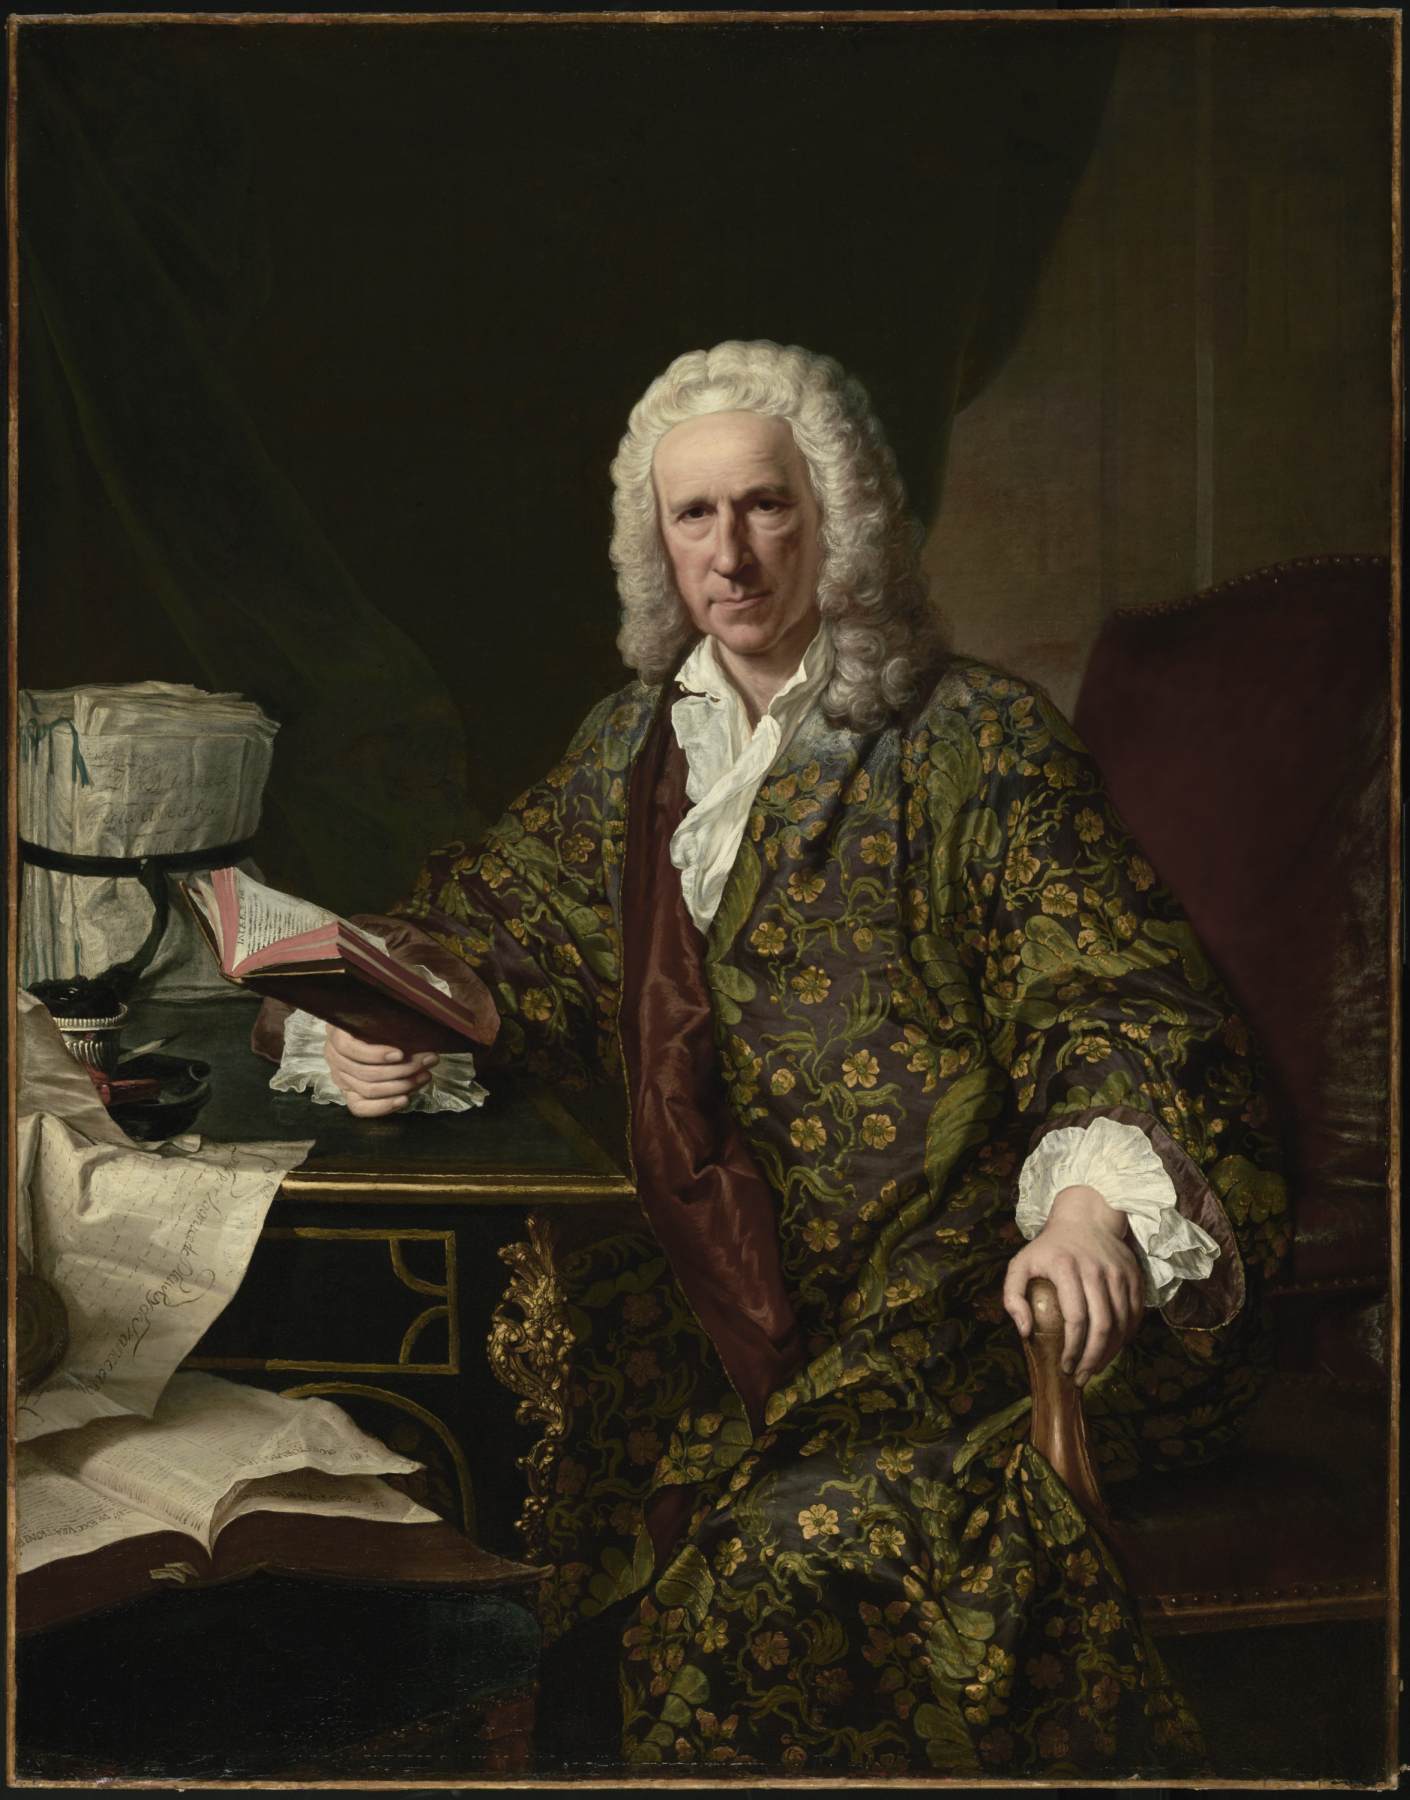 Marc de Villiers Portret